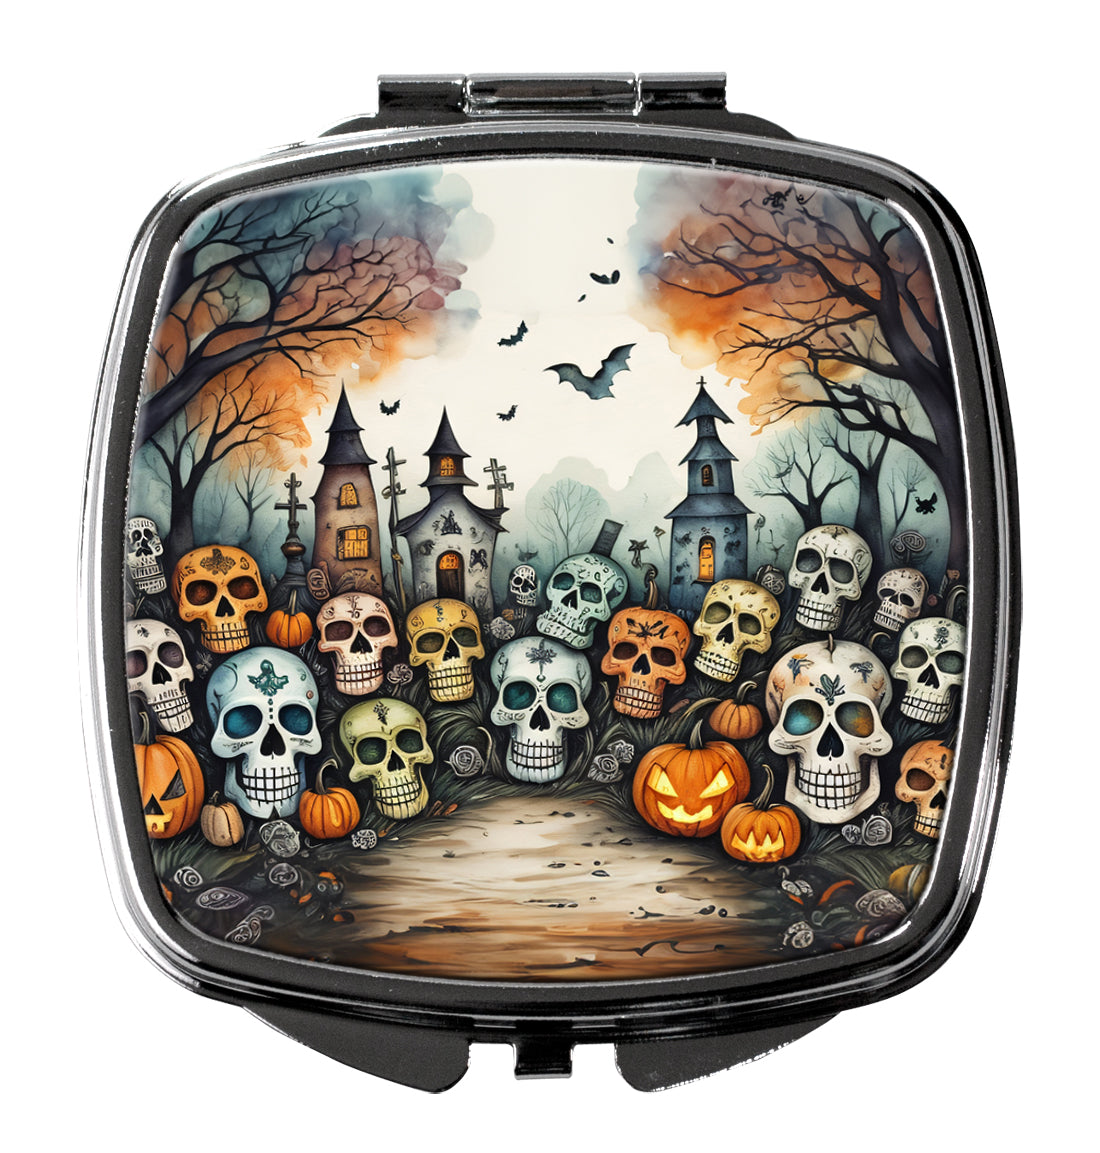 Buy this Calaveras Sugar Skulls Spooky Halloween Compact Mirror